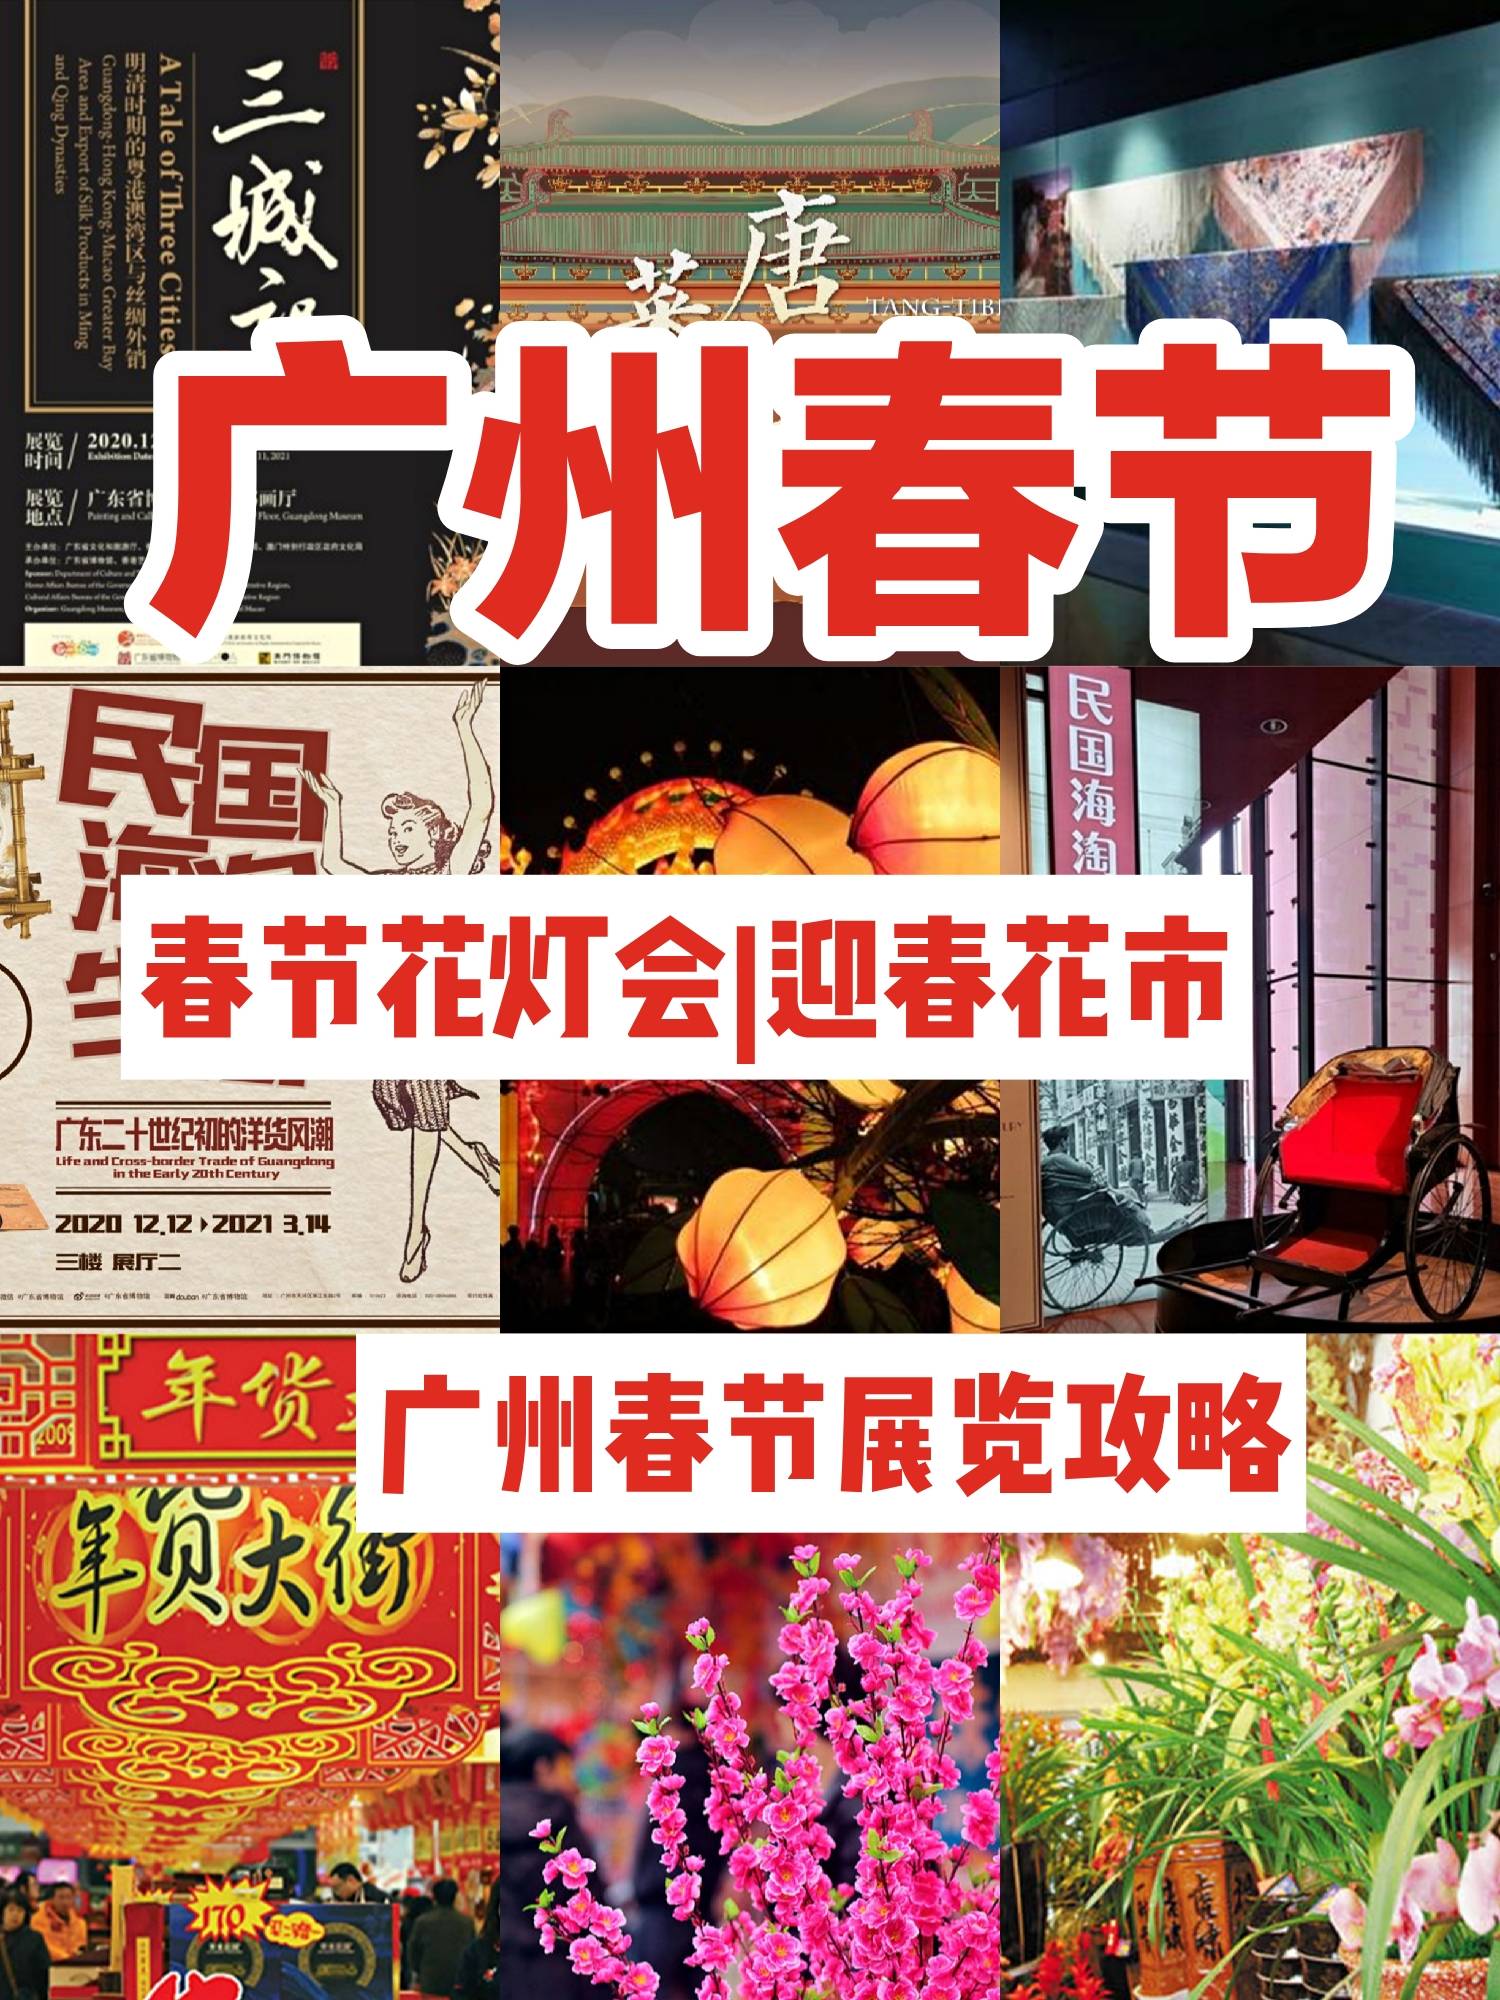 广州春节旅游攻略--花灯会、迎春花市、广州展览